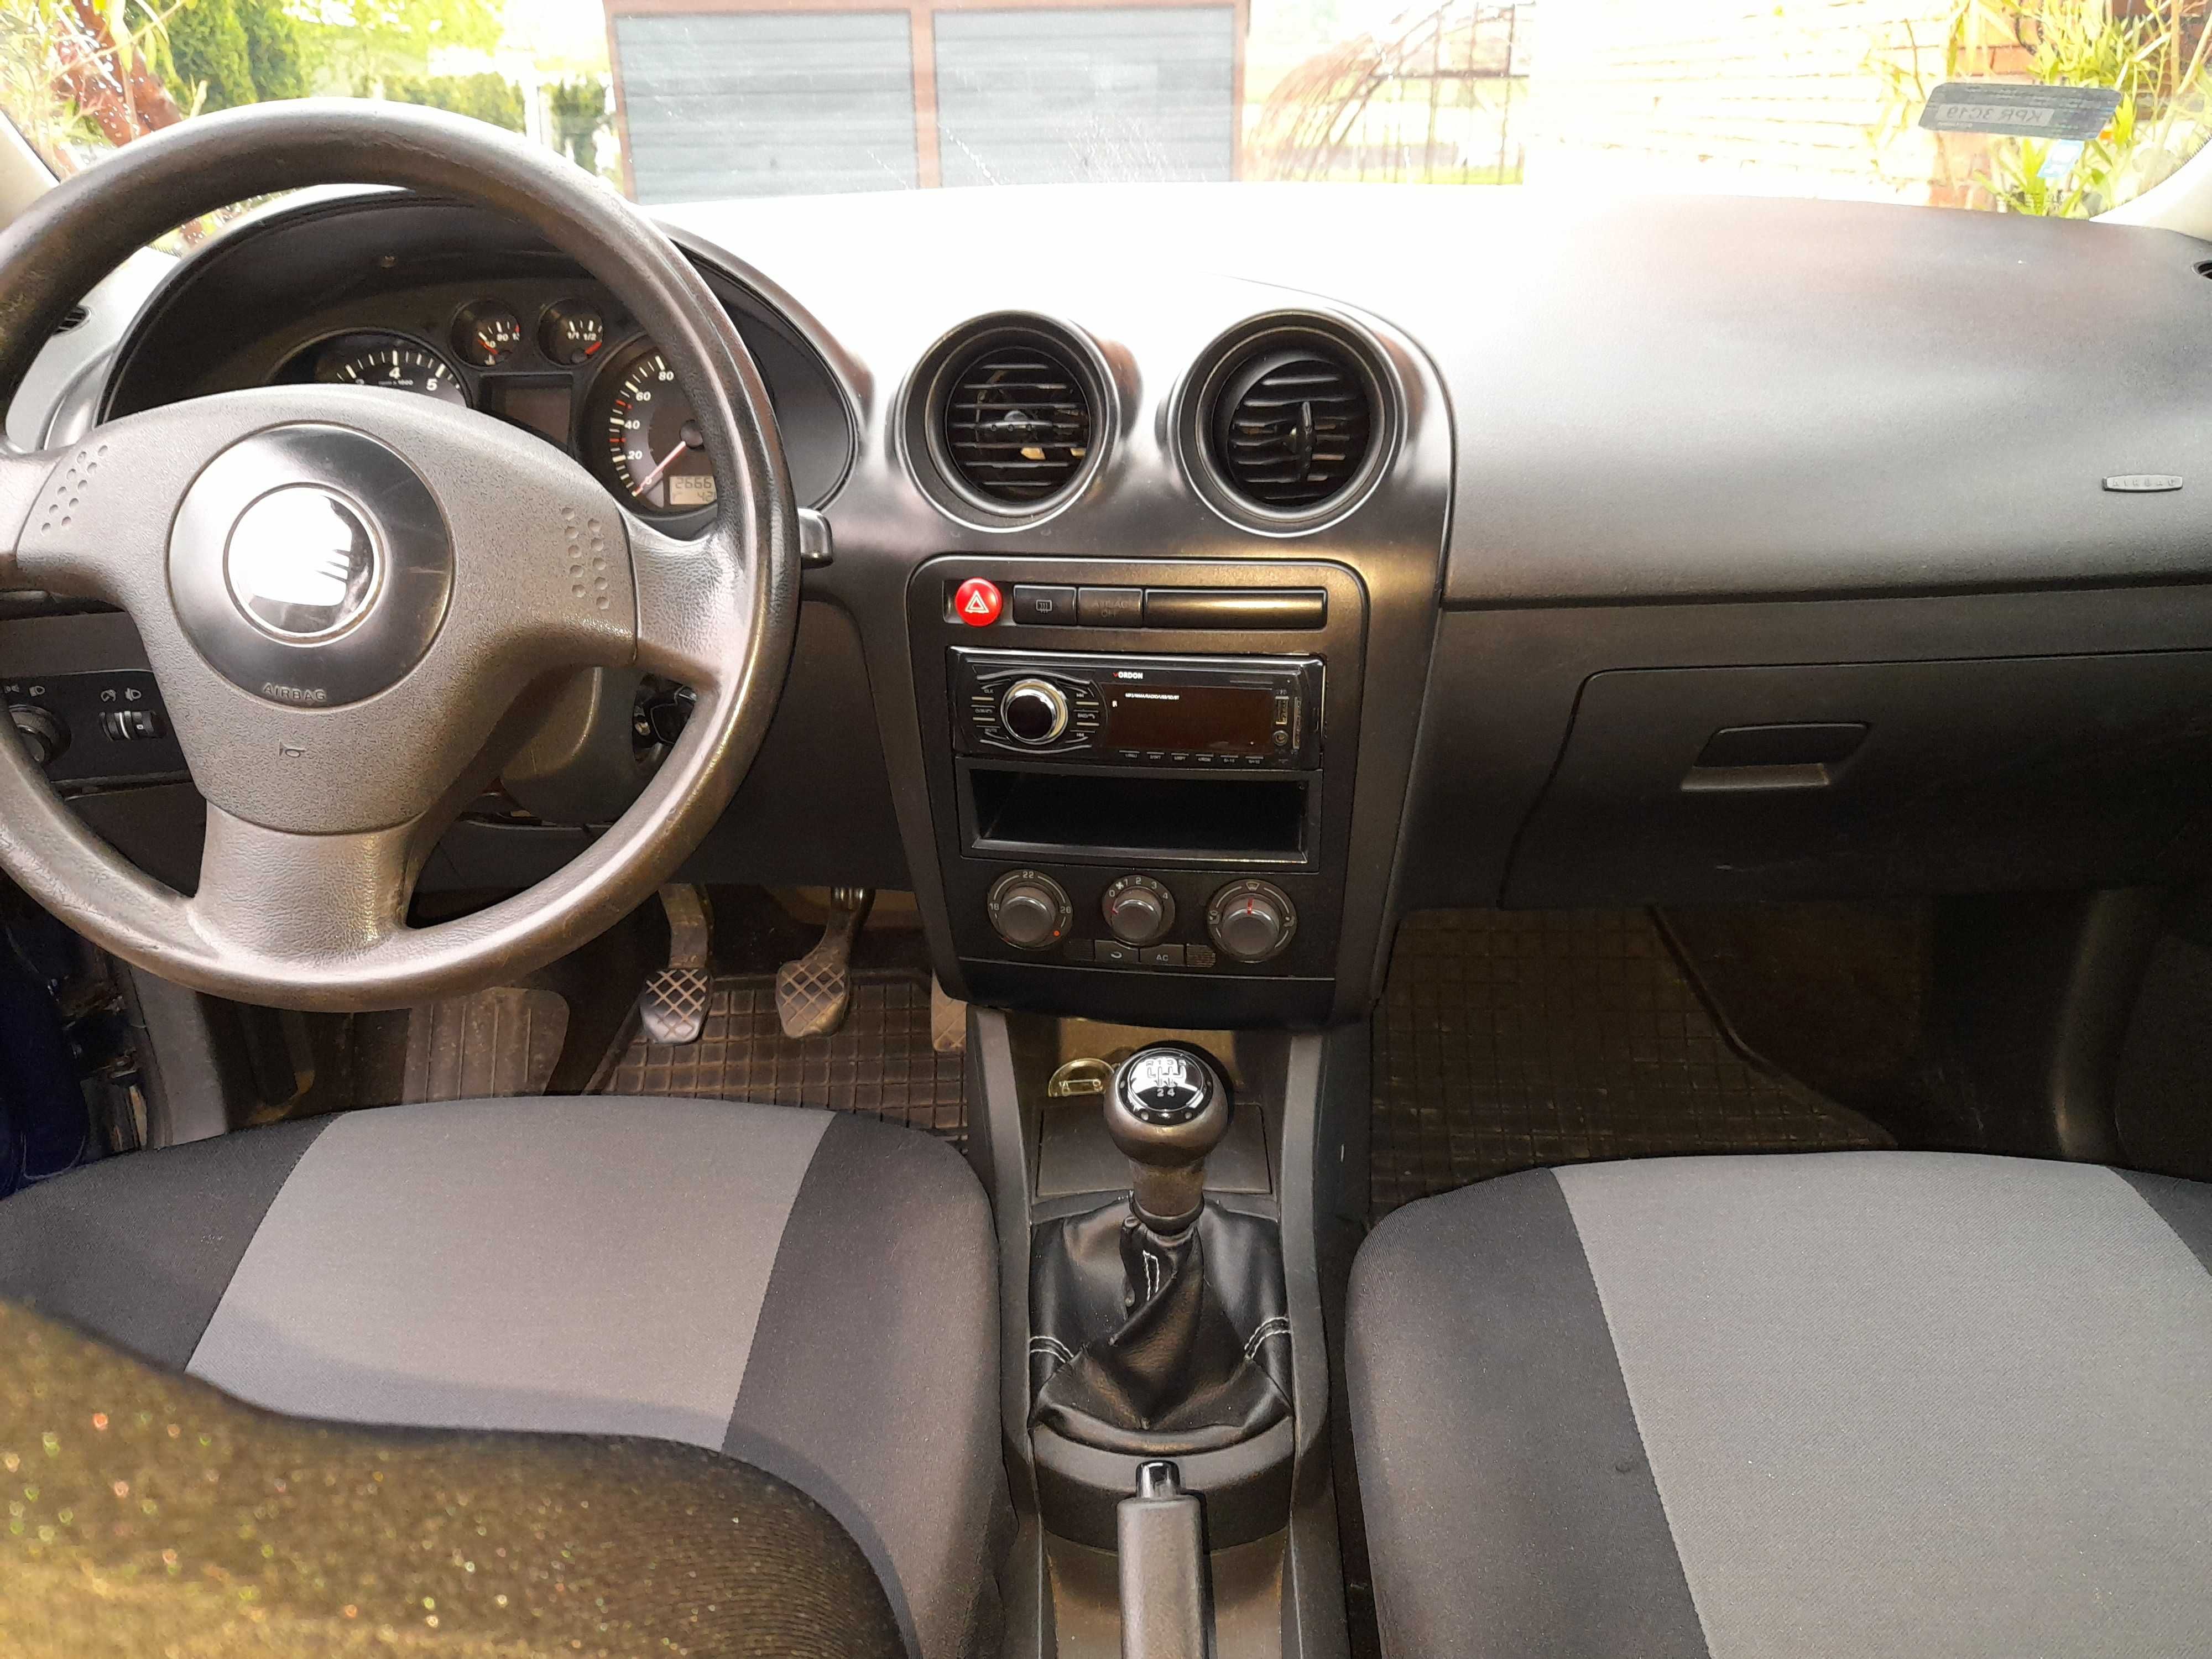 Seat Ibiza 1.4 benzyna 2003r.